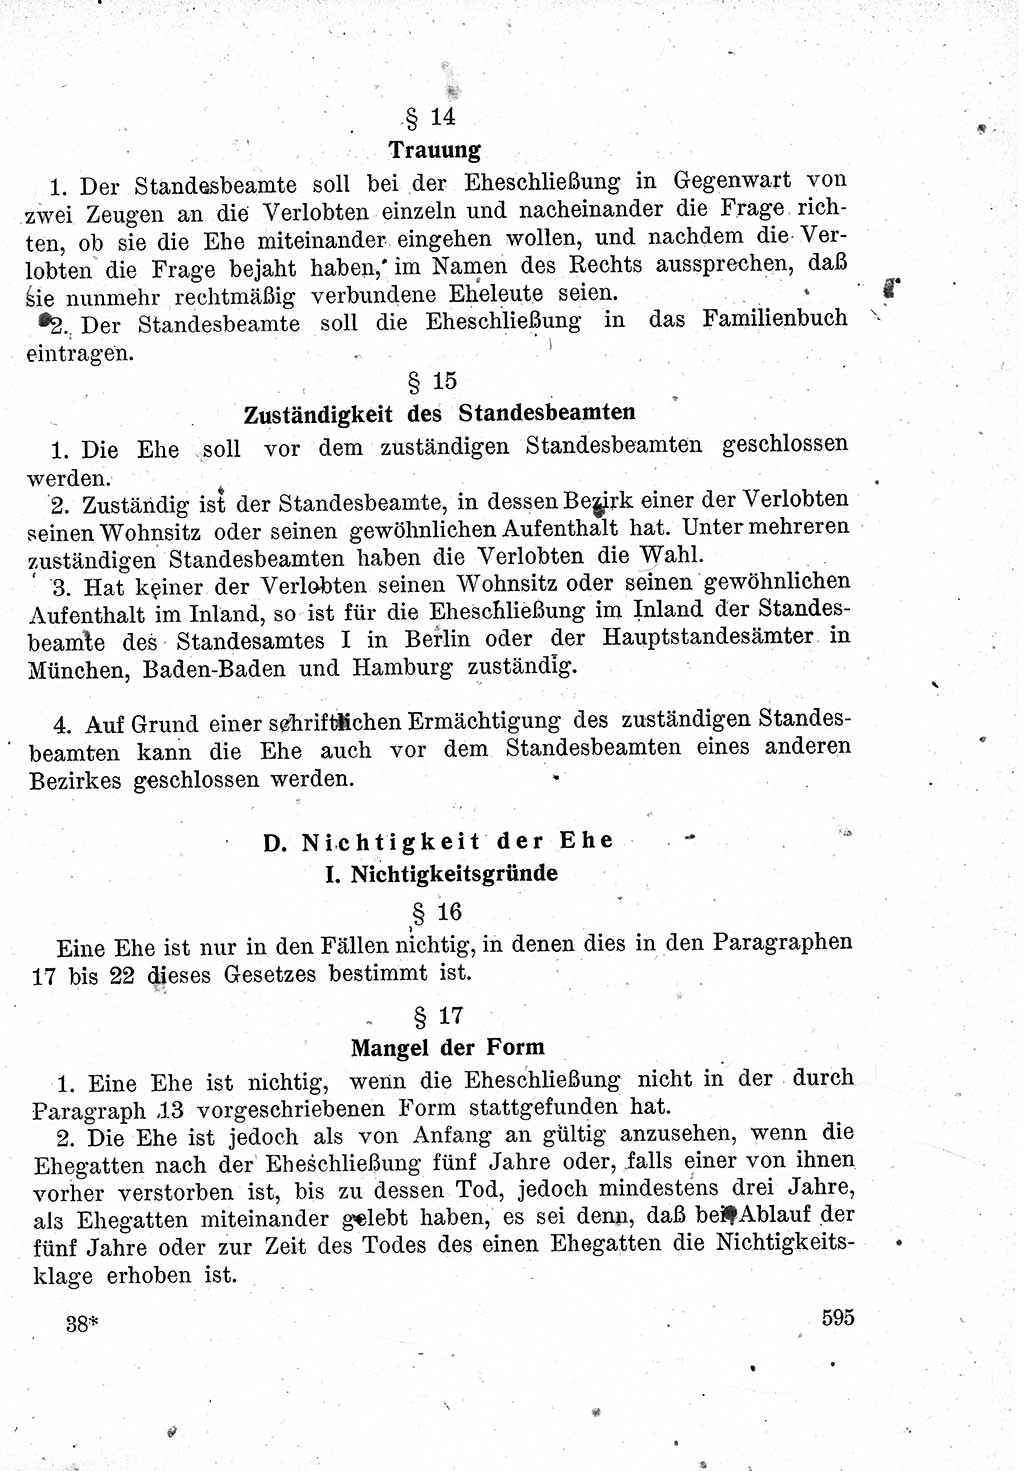 Das Recht der Besatzungsmacht (Deutschland), Proklamationen, Deklerationen, Verordnungen, Gesetze und Bekanntmachungen 1947, Seite 595 (R. Bes. Dtl. 1947, S. 595)